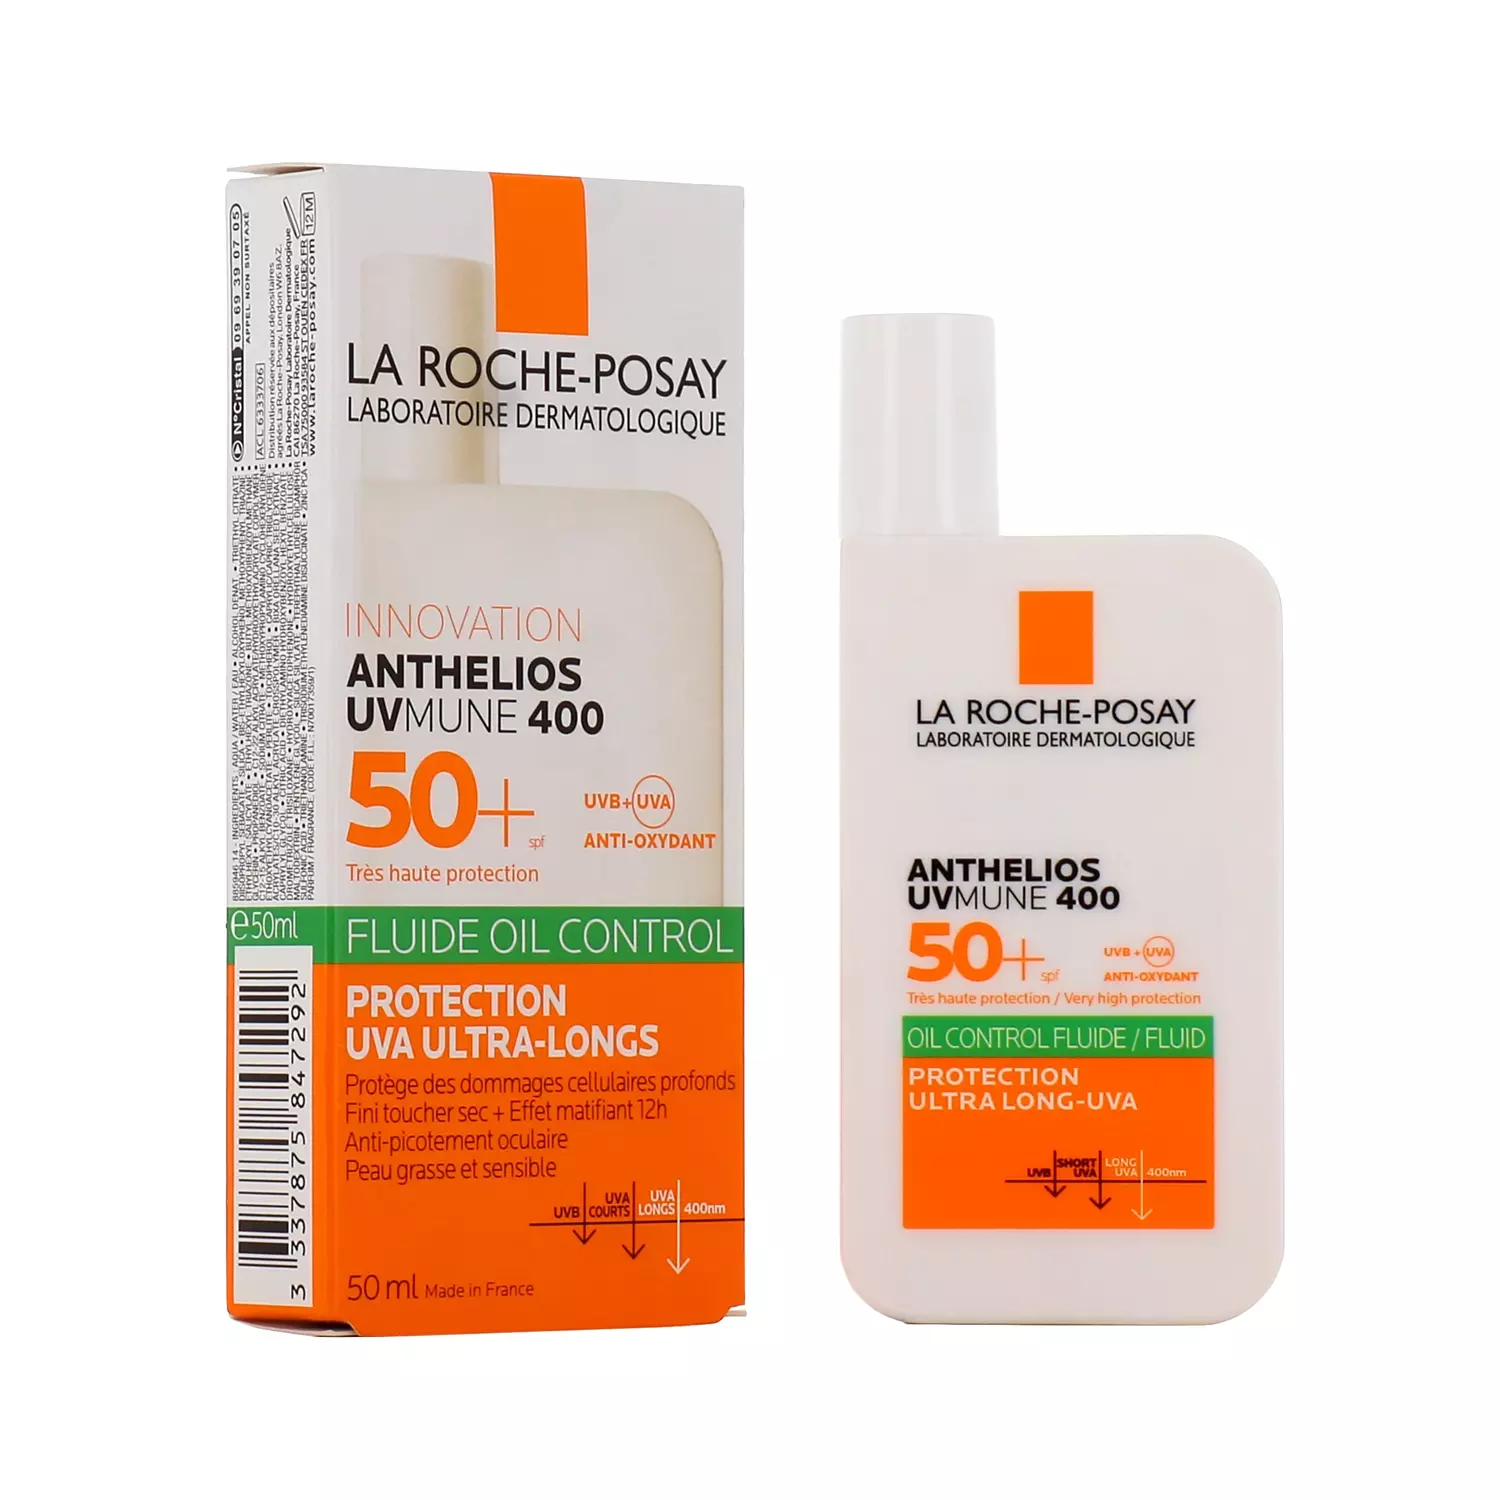 LA ROCHE-POSAY ANTHELIOS UVMUNE 400 OIL CONTROL FLUIDE SOLAIRE SPF50+ 50ML